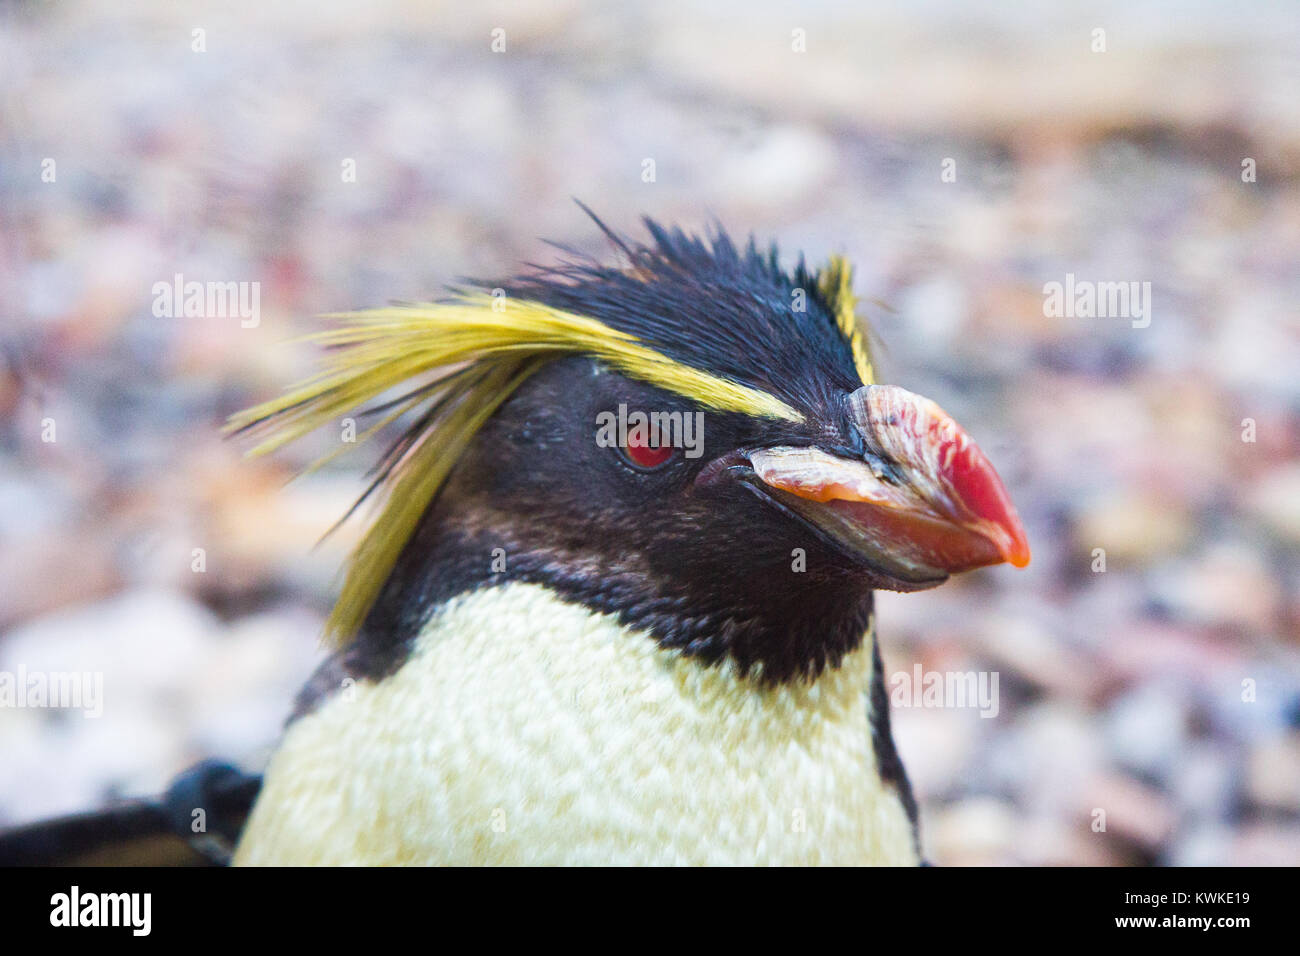 Penguin Stock Photo